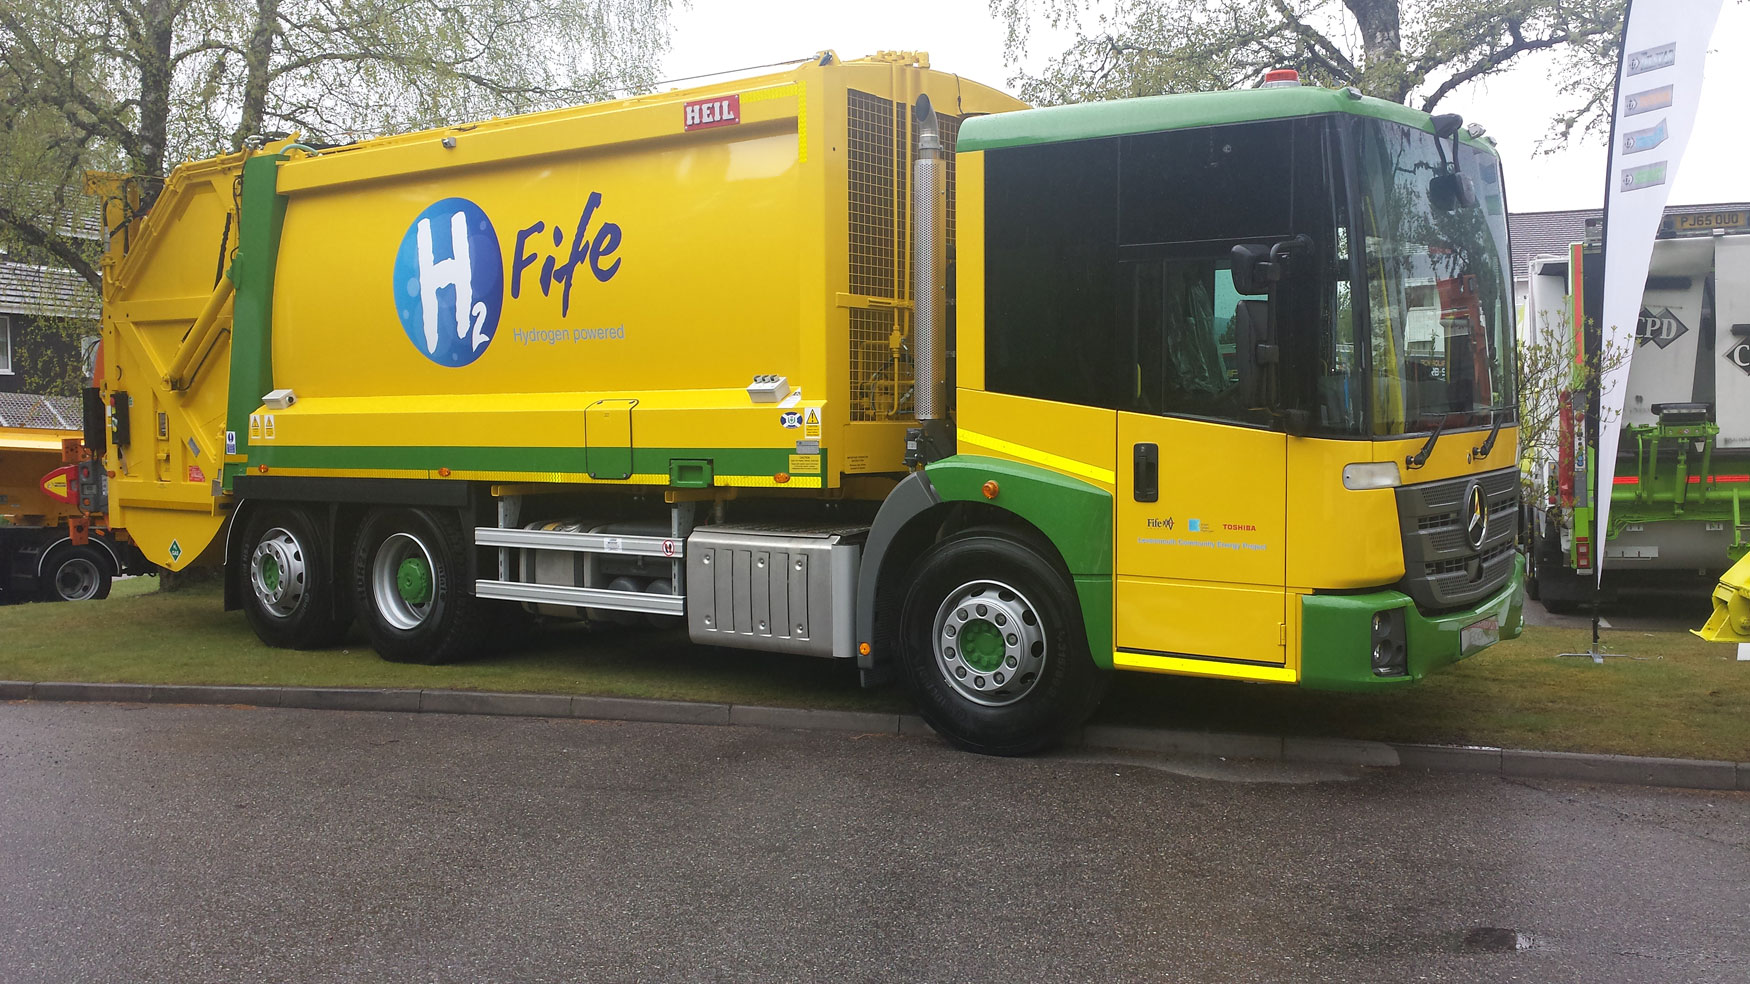 Uno de los nuevos camiones adquiridos por el municipio de Fife